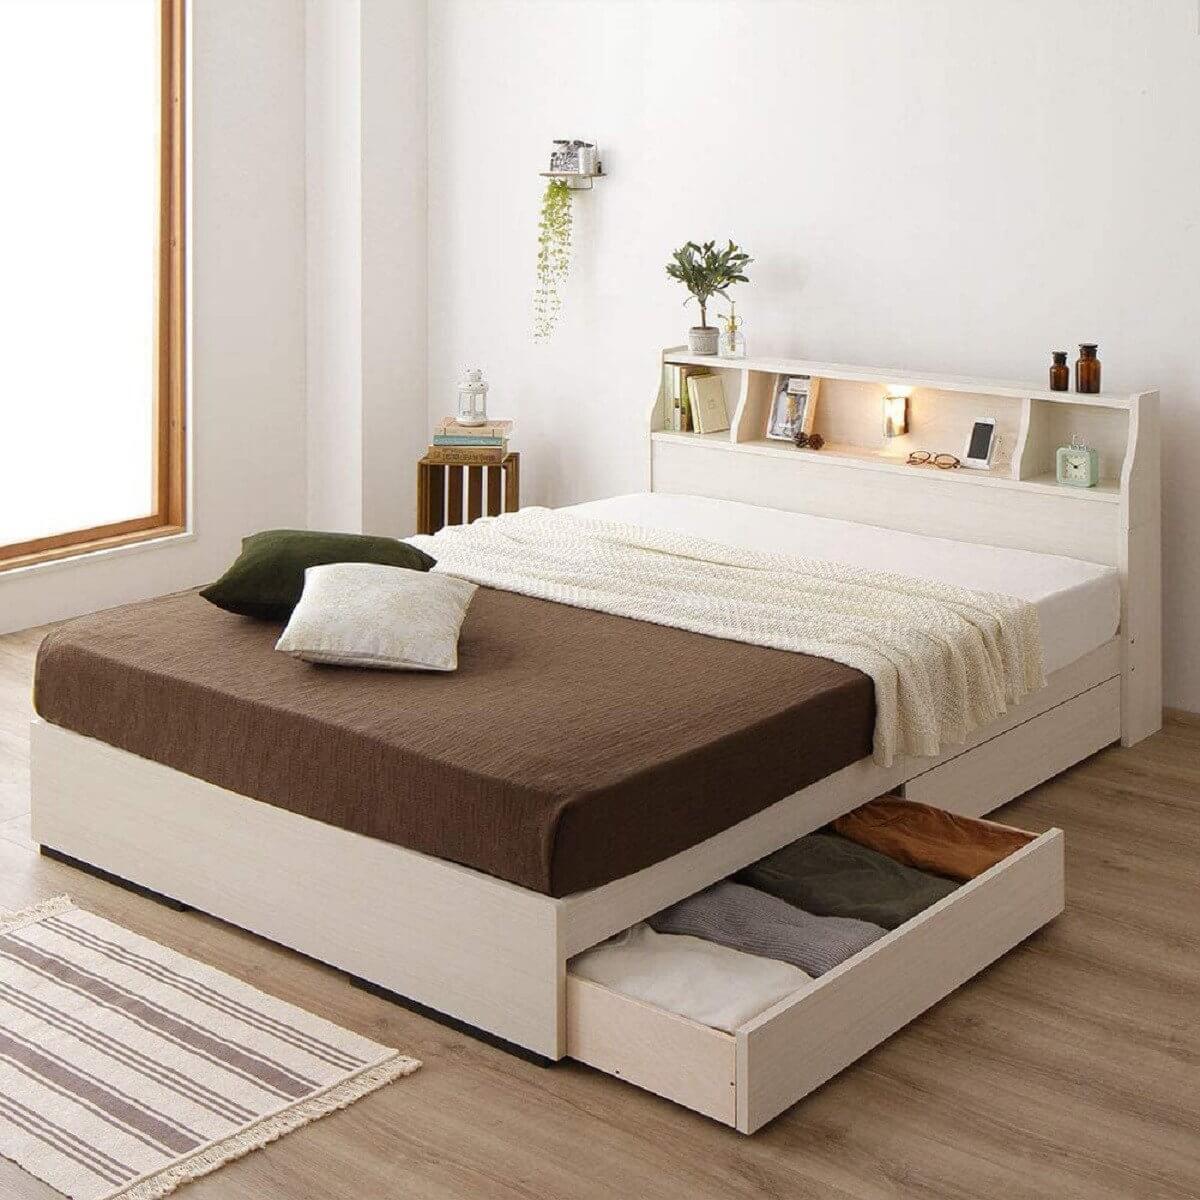 Các mẫu giường ngủ 1m4 giá rẻ, đẹp không thể bỏ qua